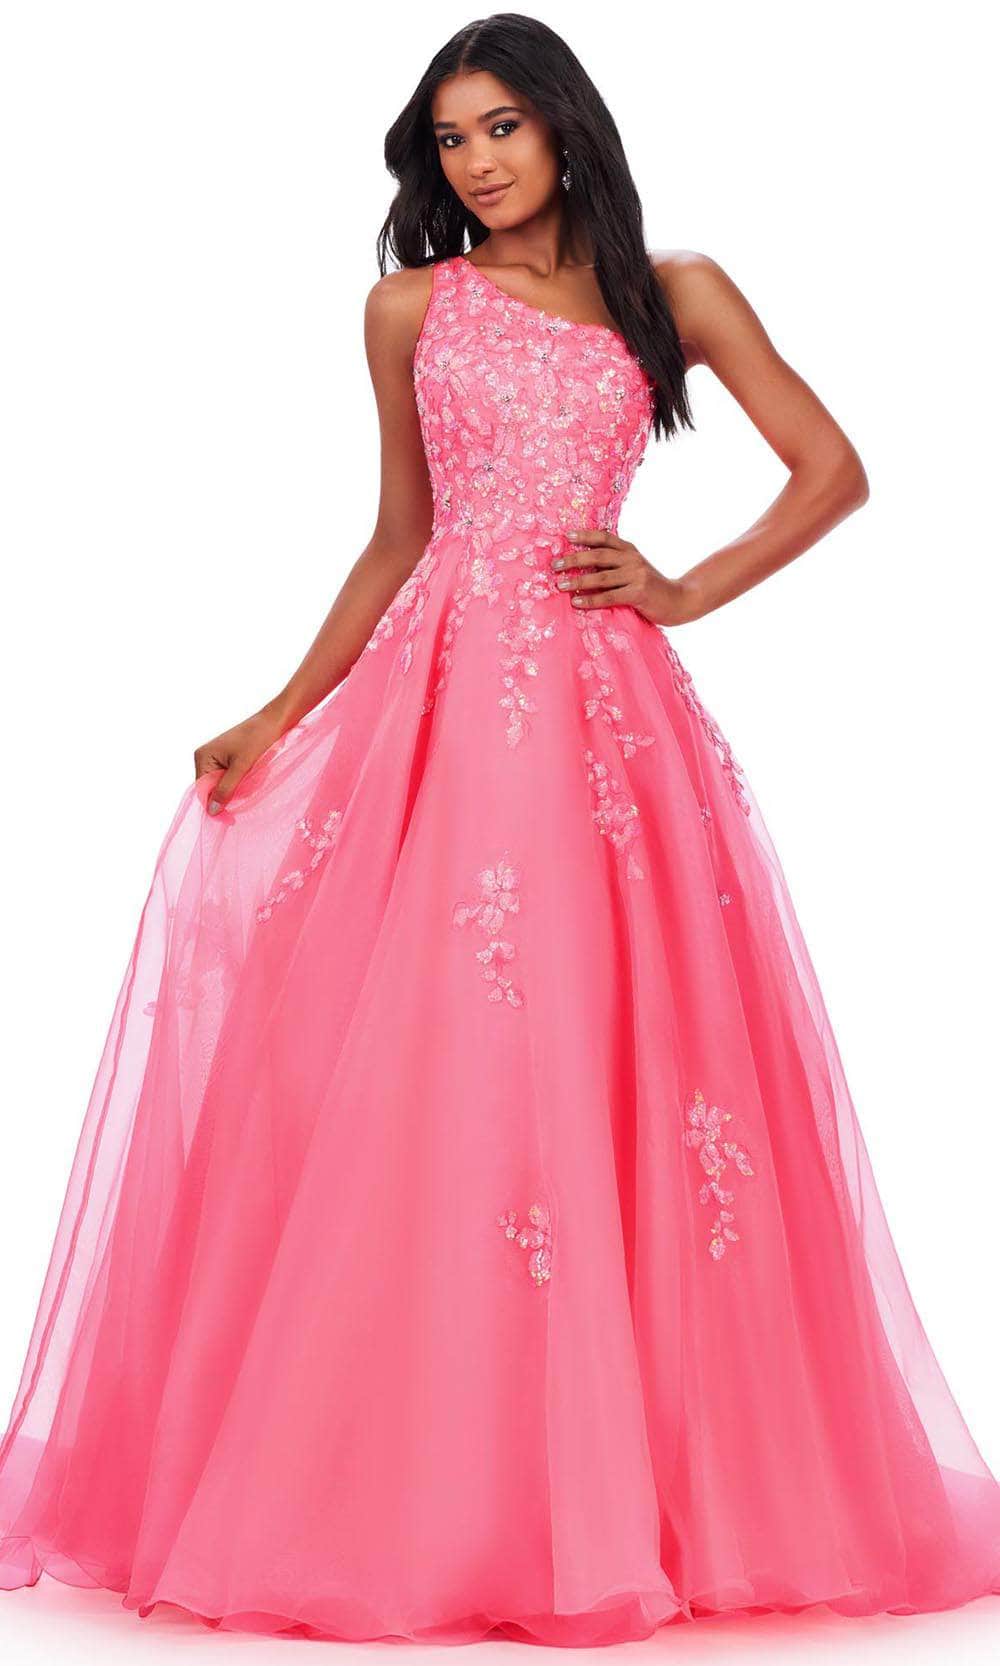 Ashley Lauren 11573 - One Shoulder Sequin Prom Dress 00 /  Hot Pink